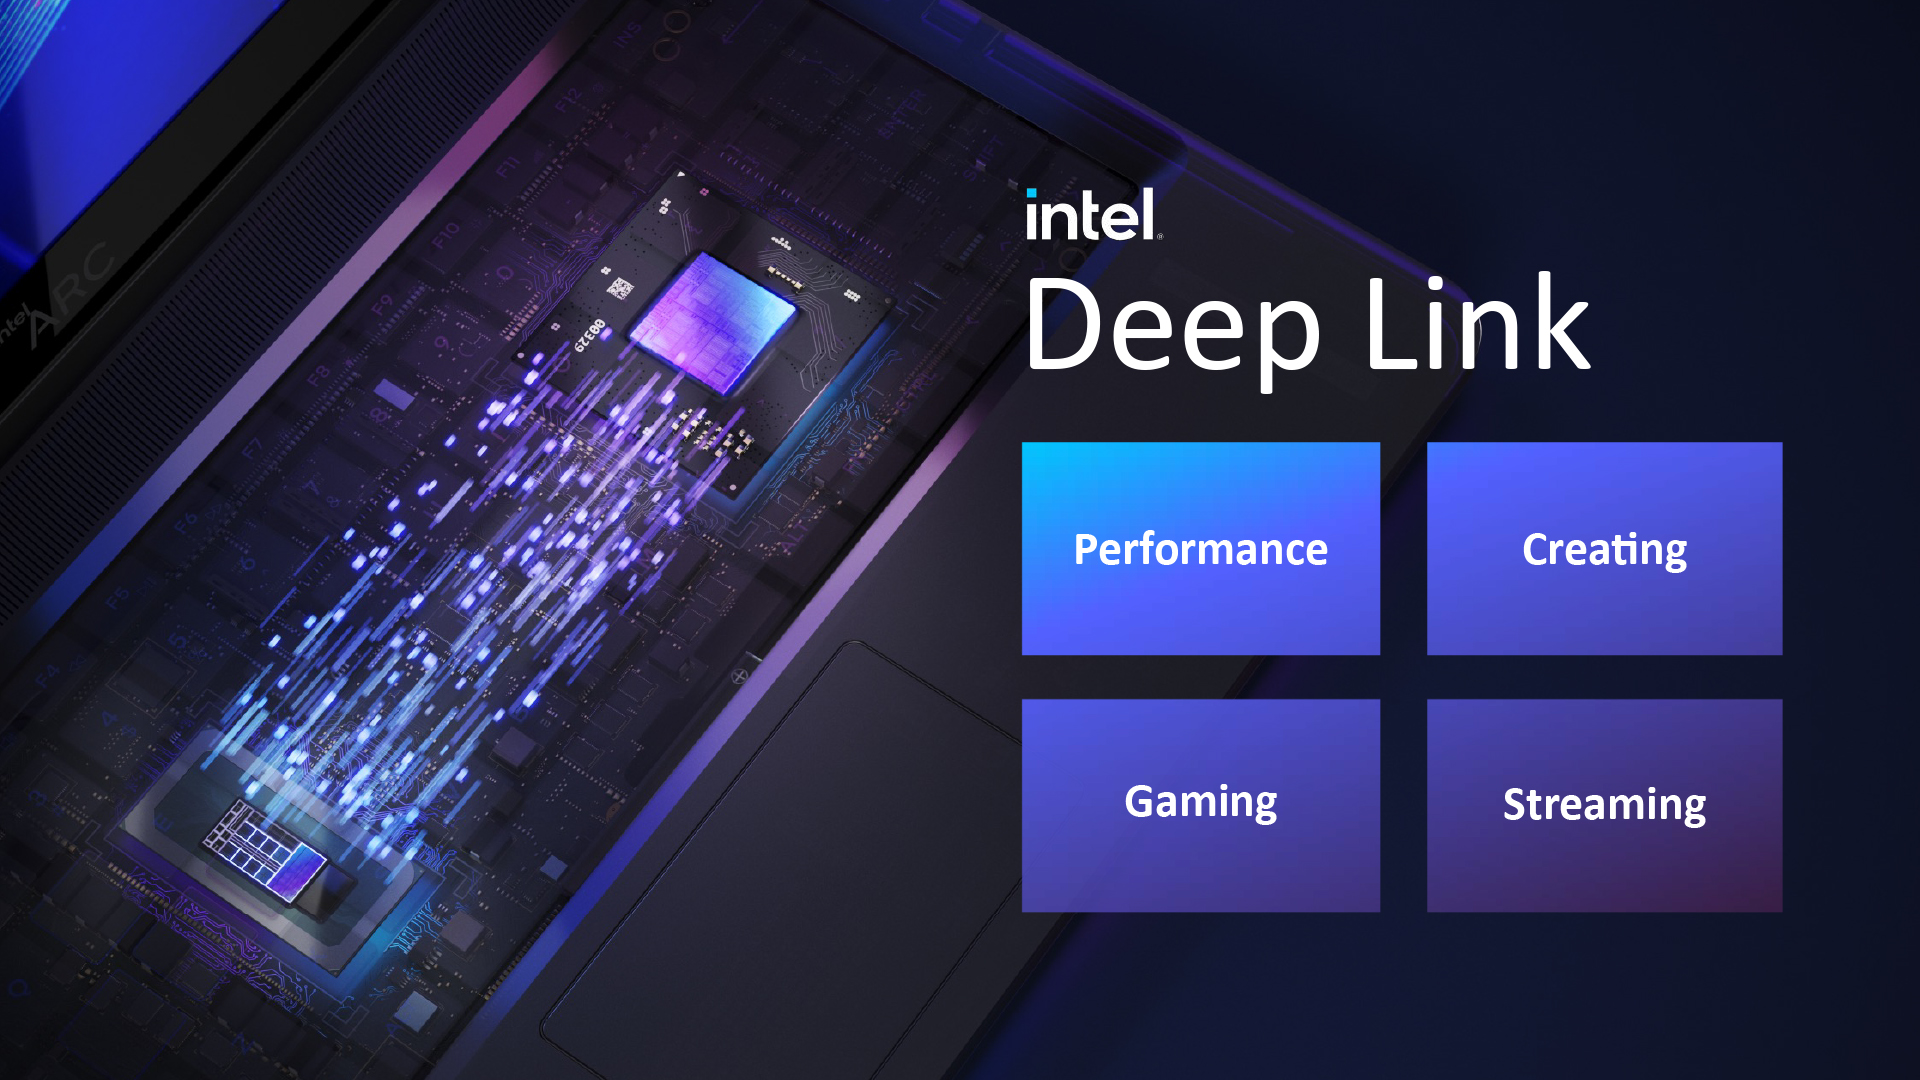 Intel Deep Link